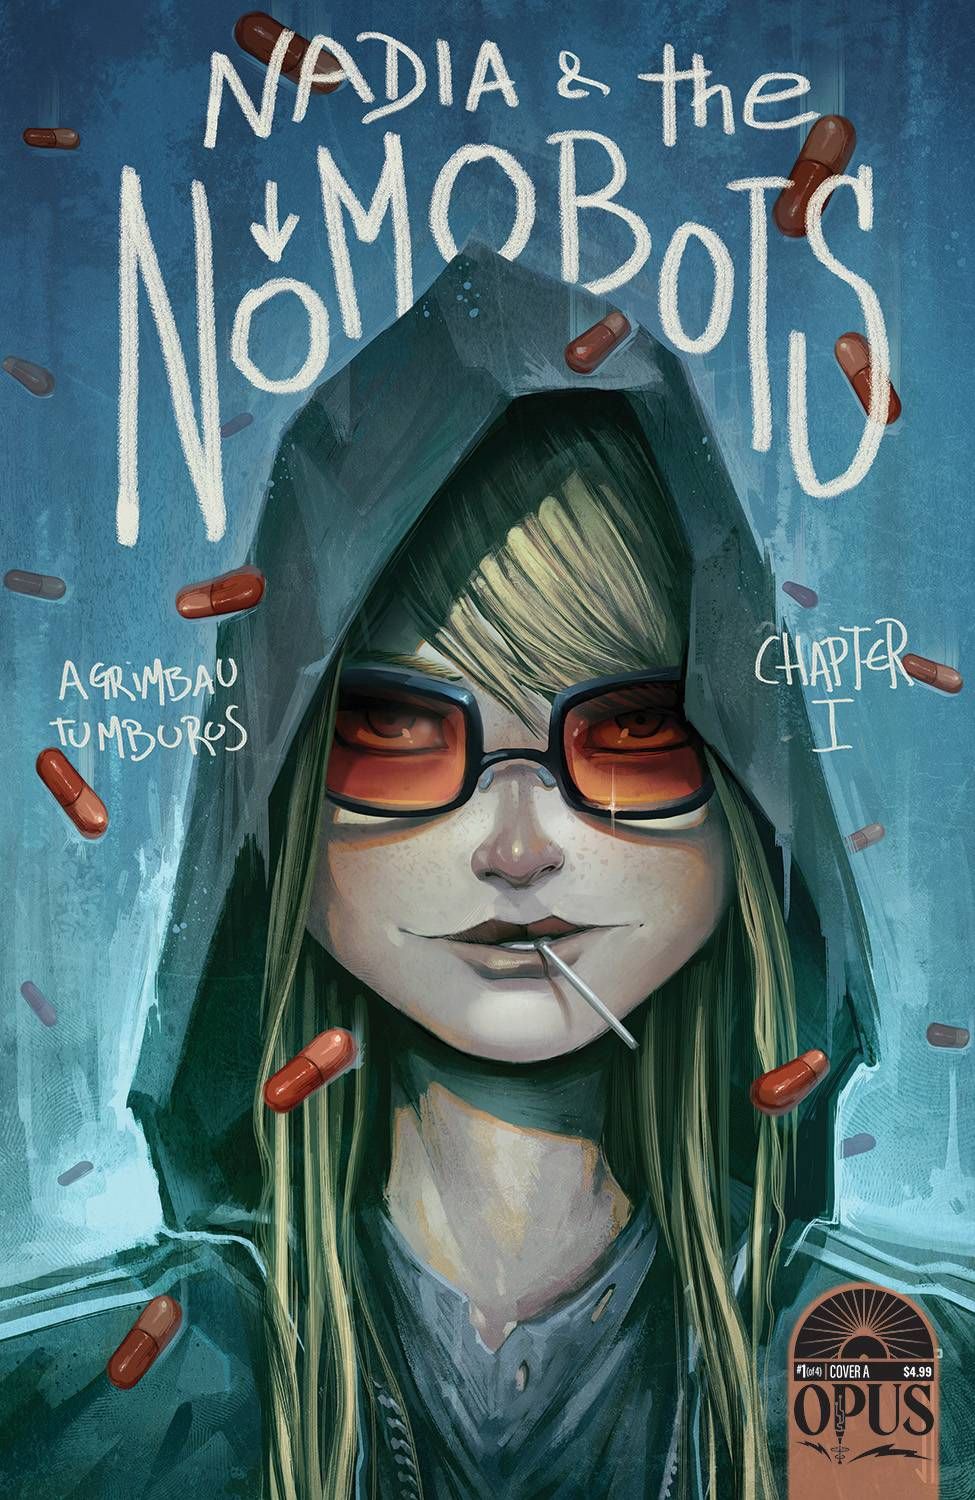 Nadia & the Nomobots #1 Comic